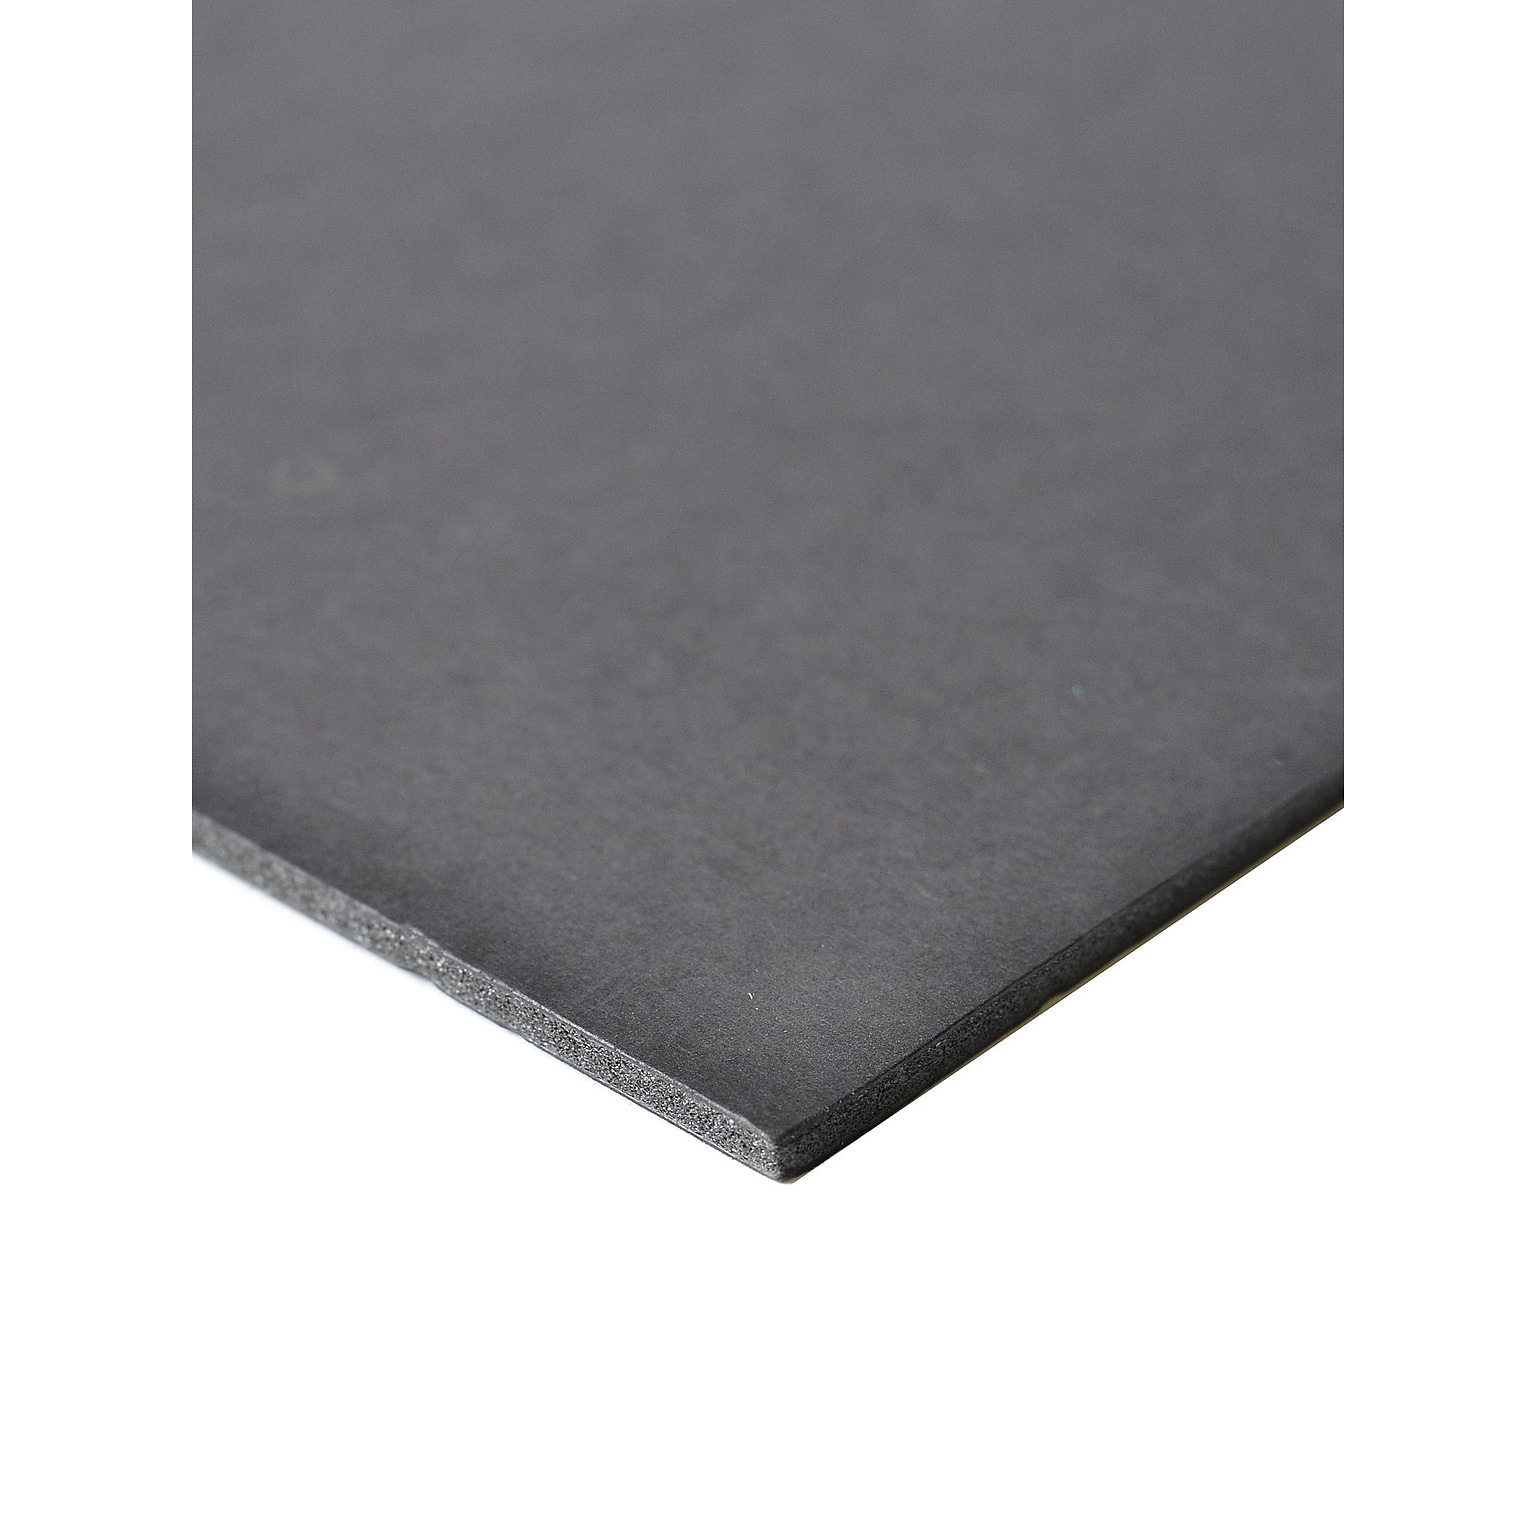 Crescent Fome-Cor Board, 3/16 x 32 x 40, Black (11188-3240C)